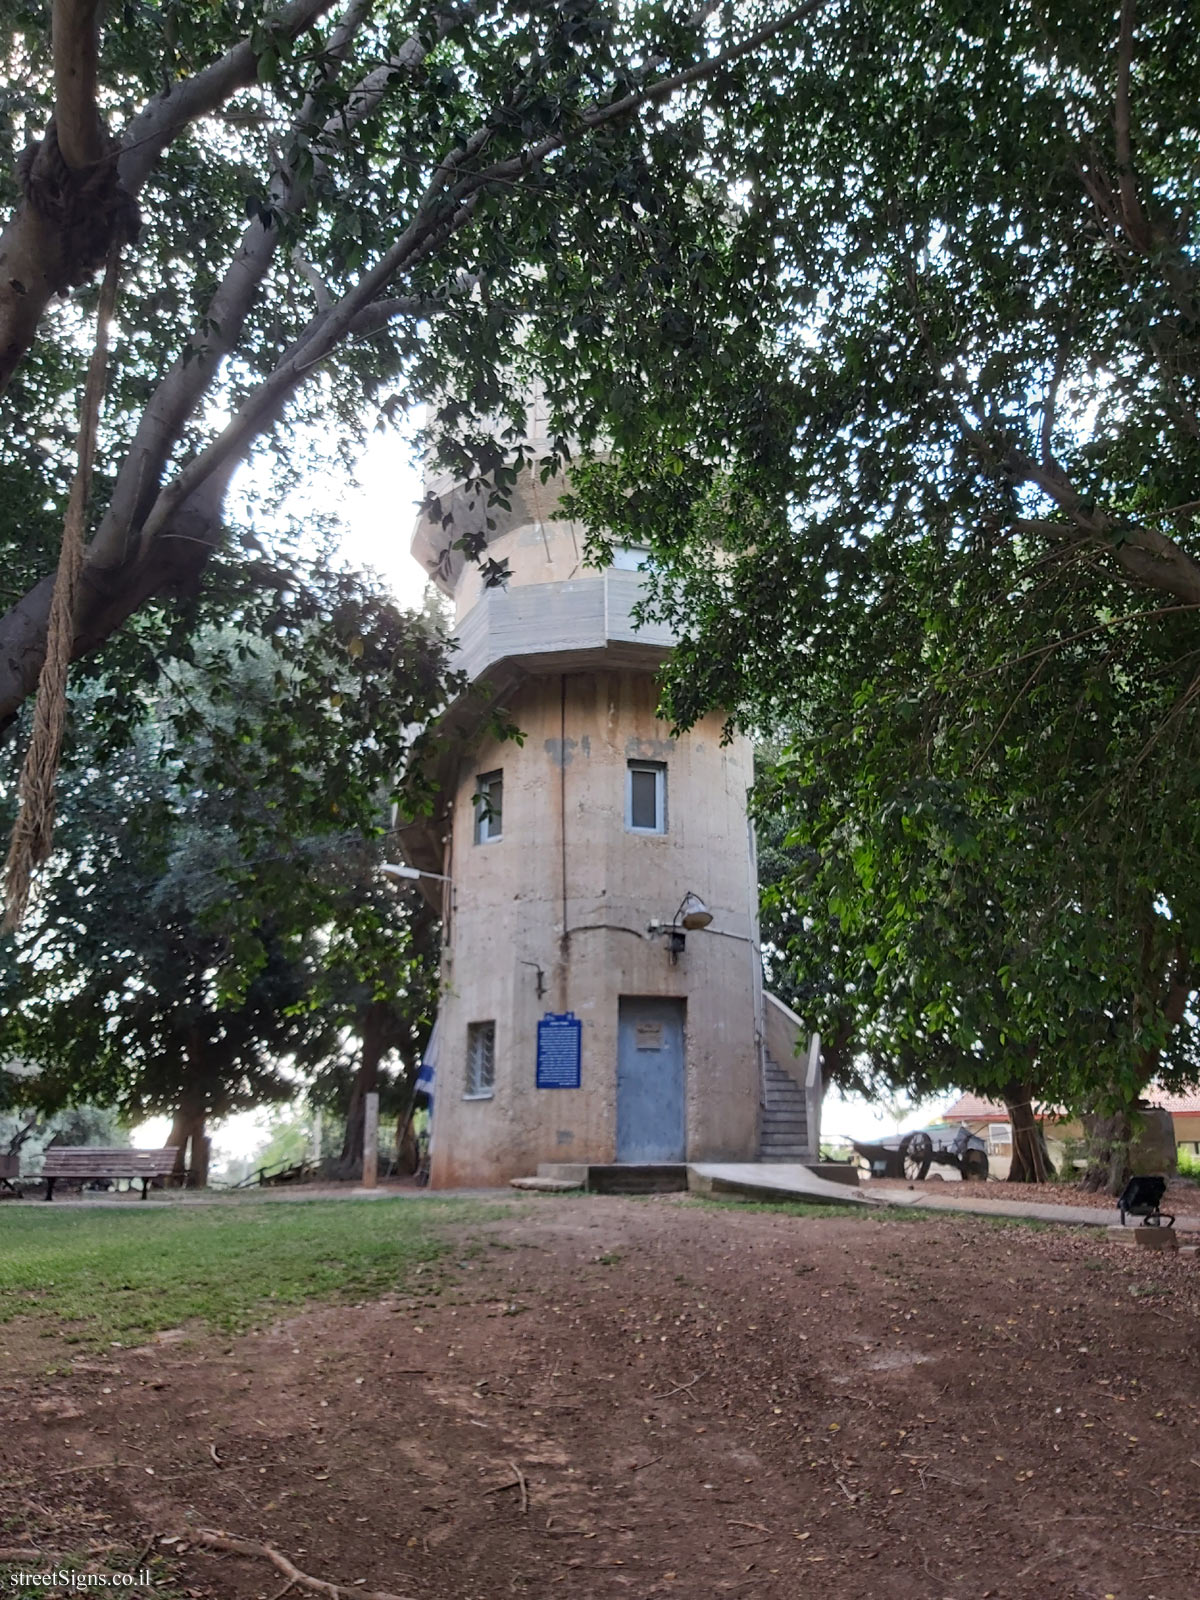 Heritage Sites in Israel - The Water tower - 3, Kfar Haim, Israel